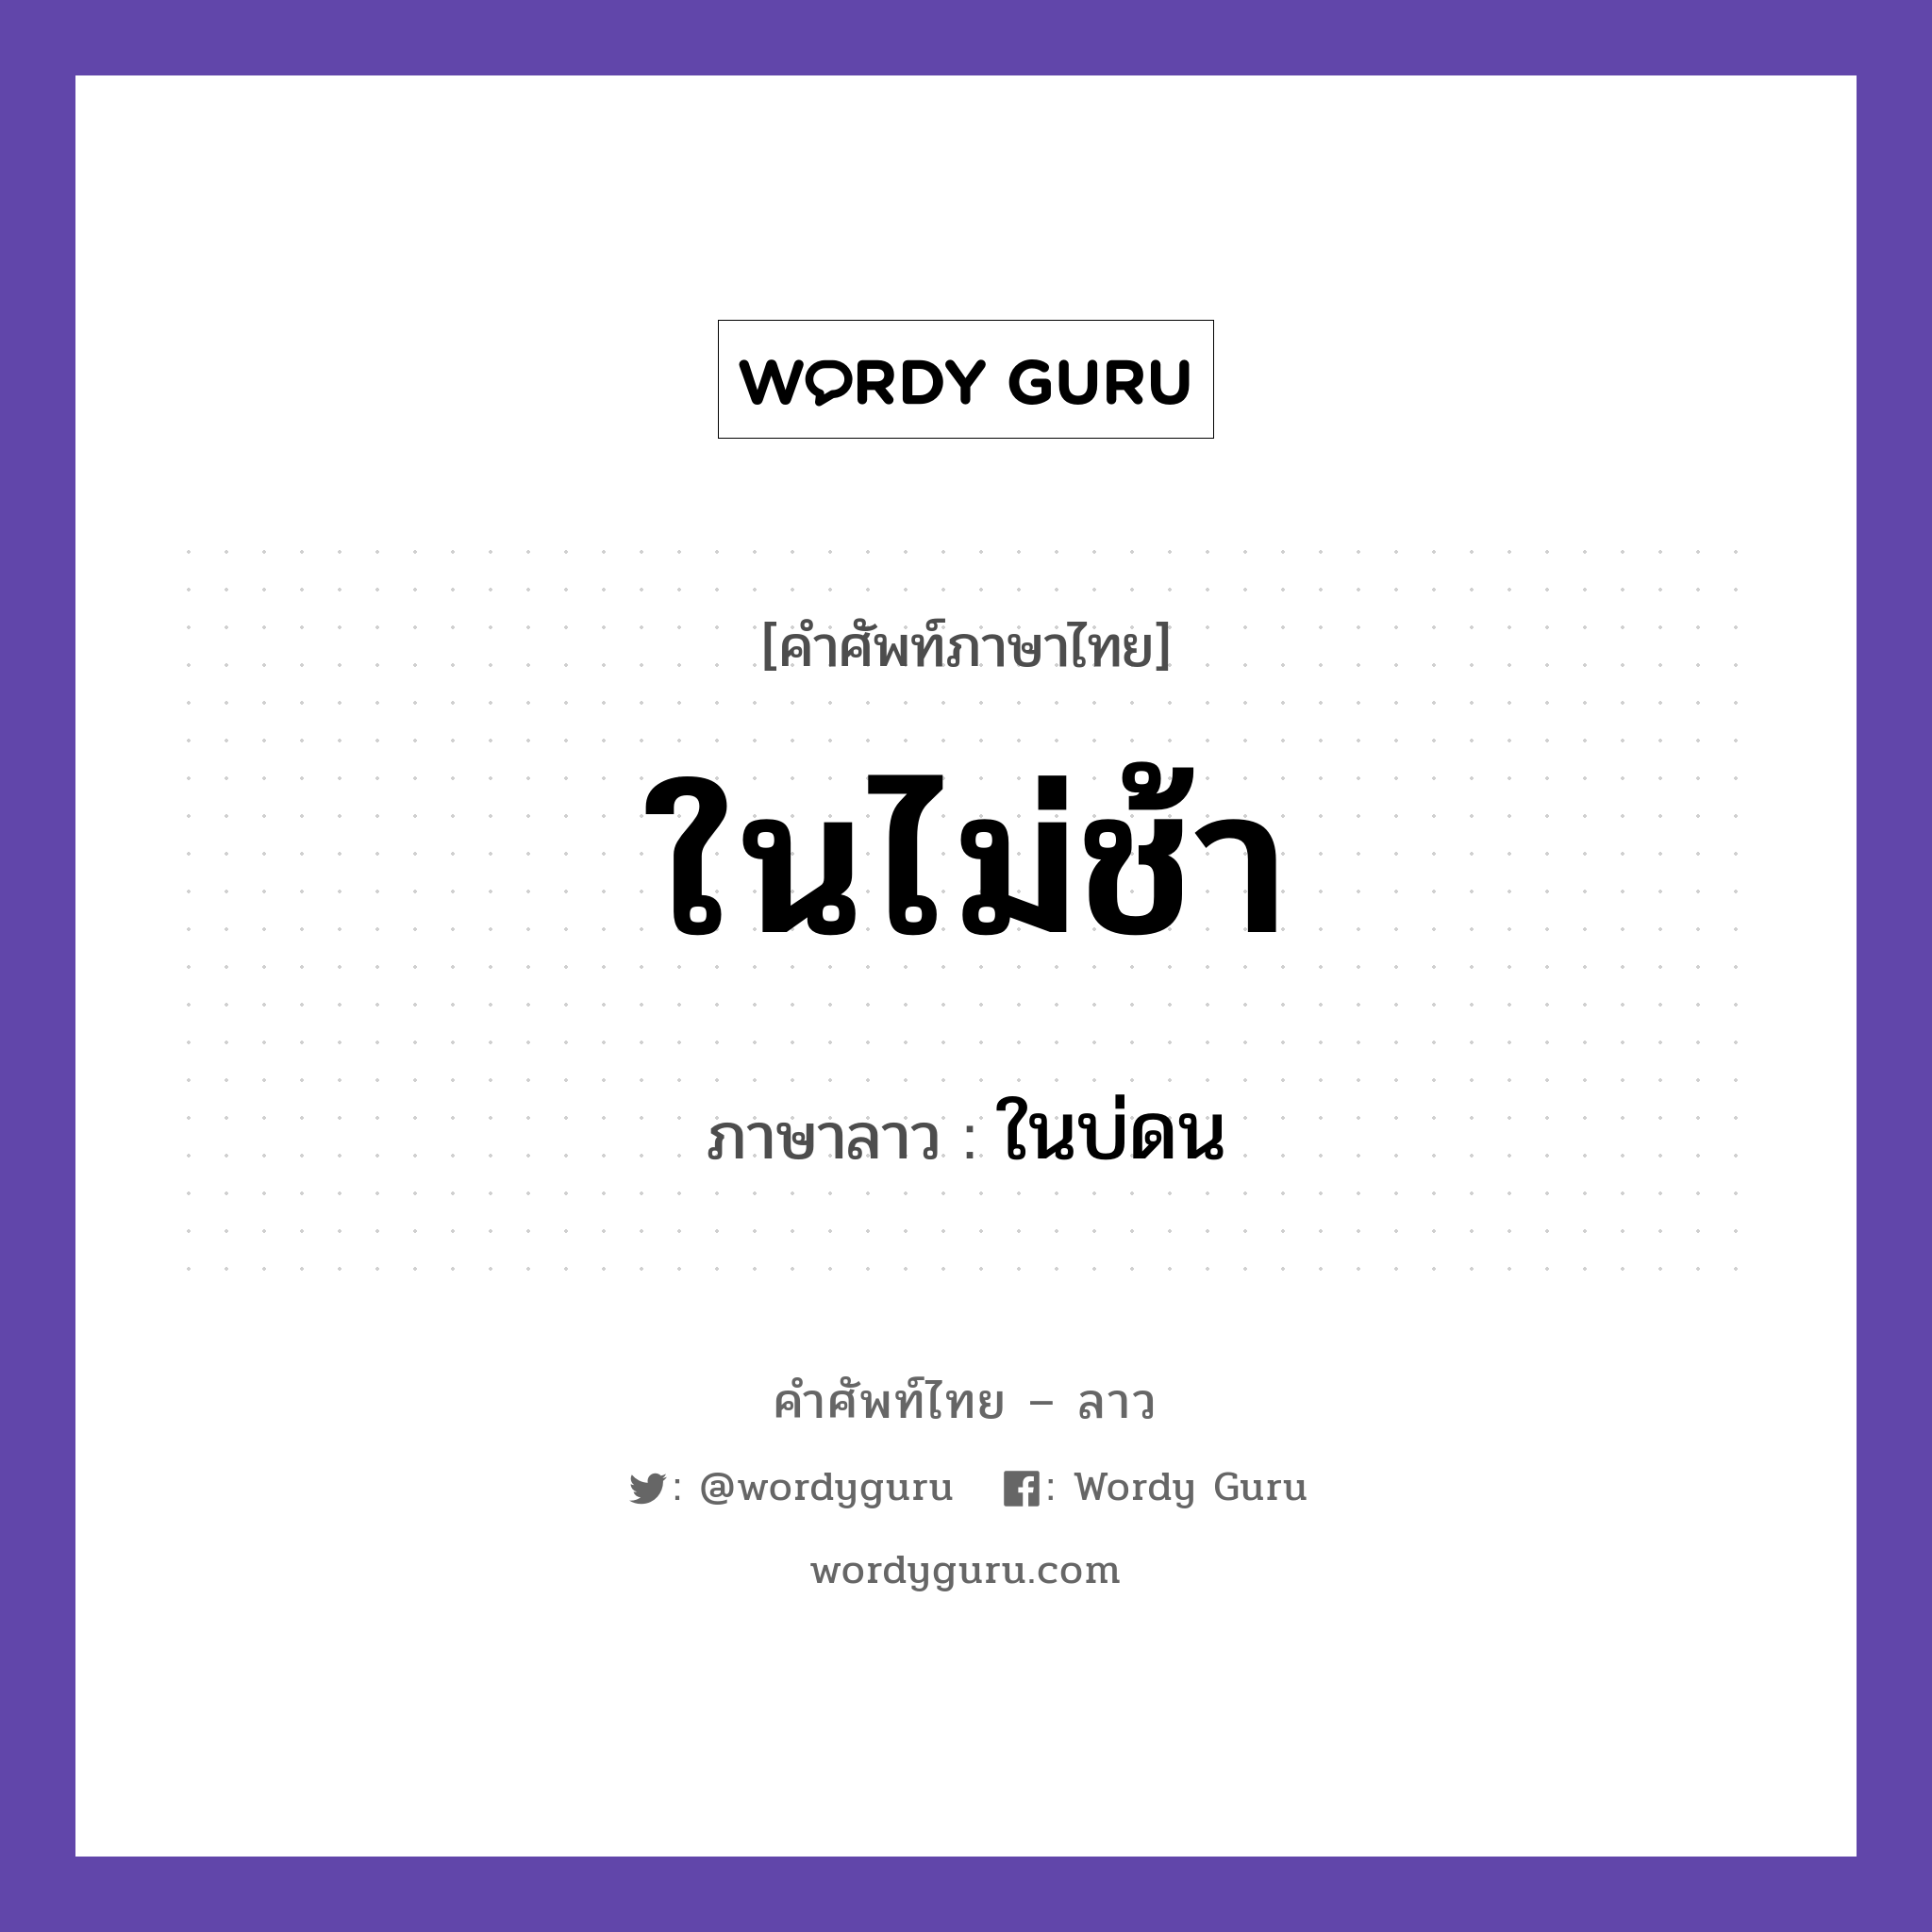 ในไม่ช้า ภาษาลาวคืออะไร, คำศัพท์ภาษาไทย - ลาว ในไม่ช้า ภาษาลาว ในบ่ดน หมวด วันเวลา หมวด วันเวลา